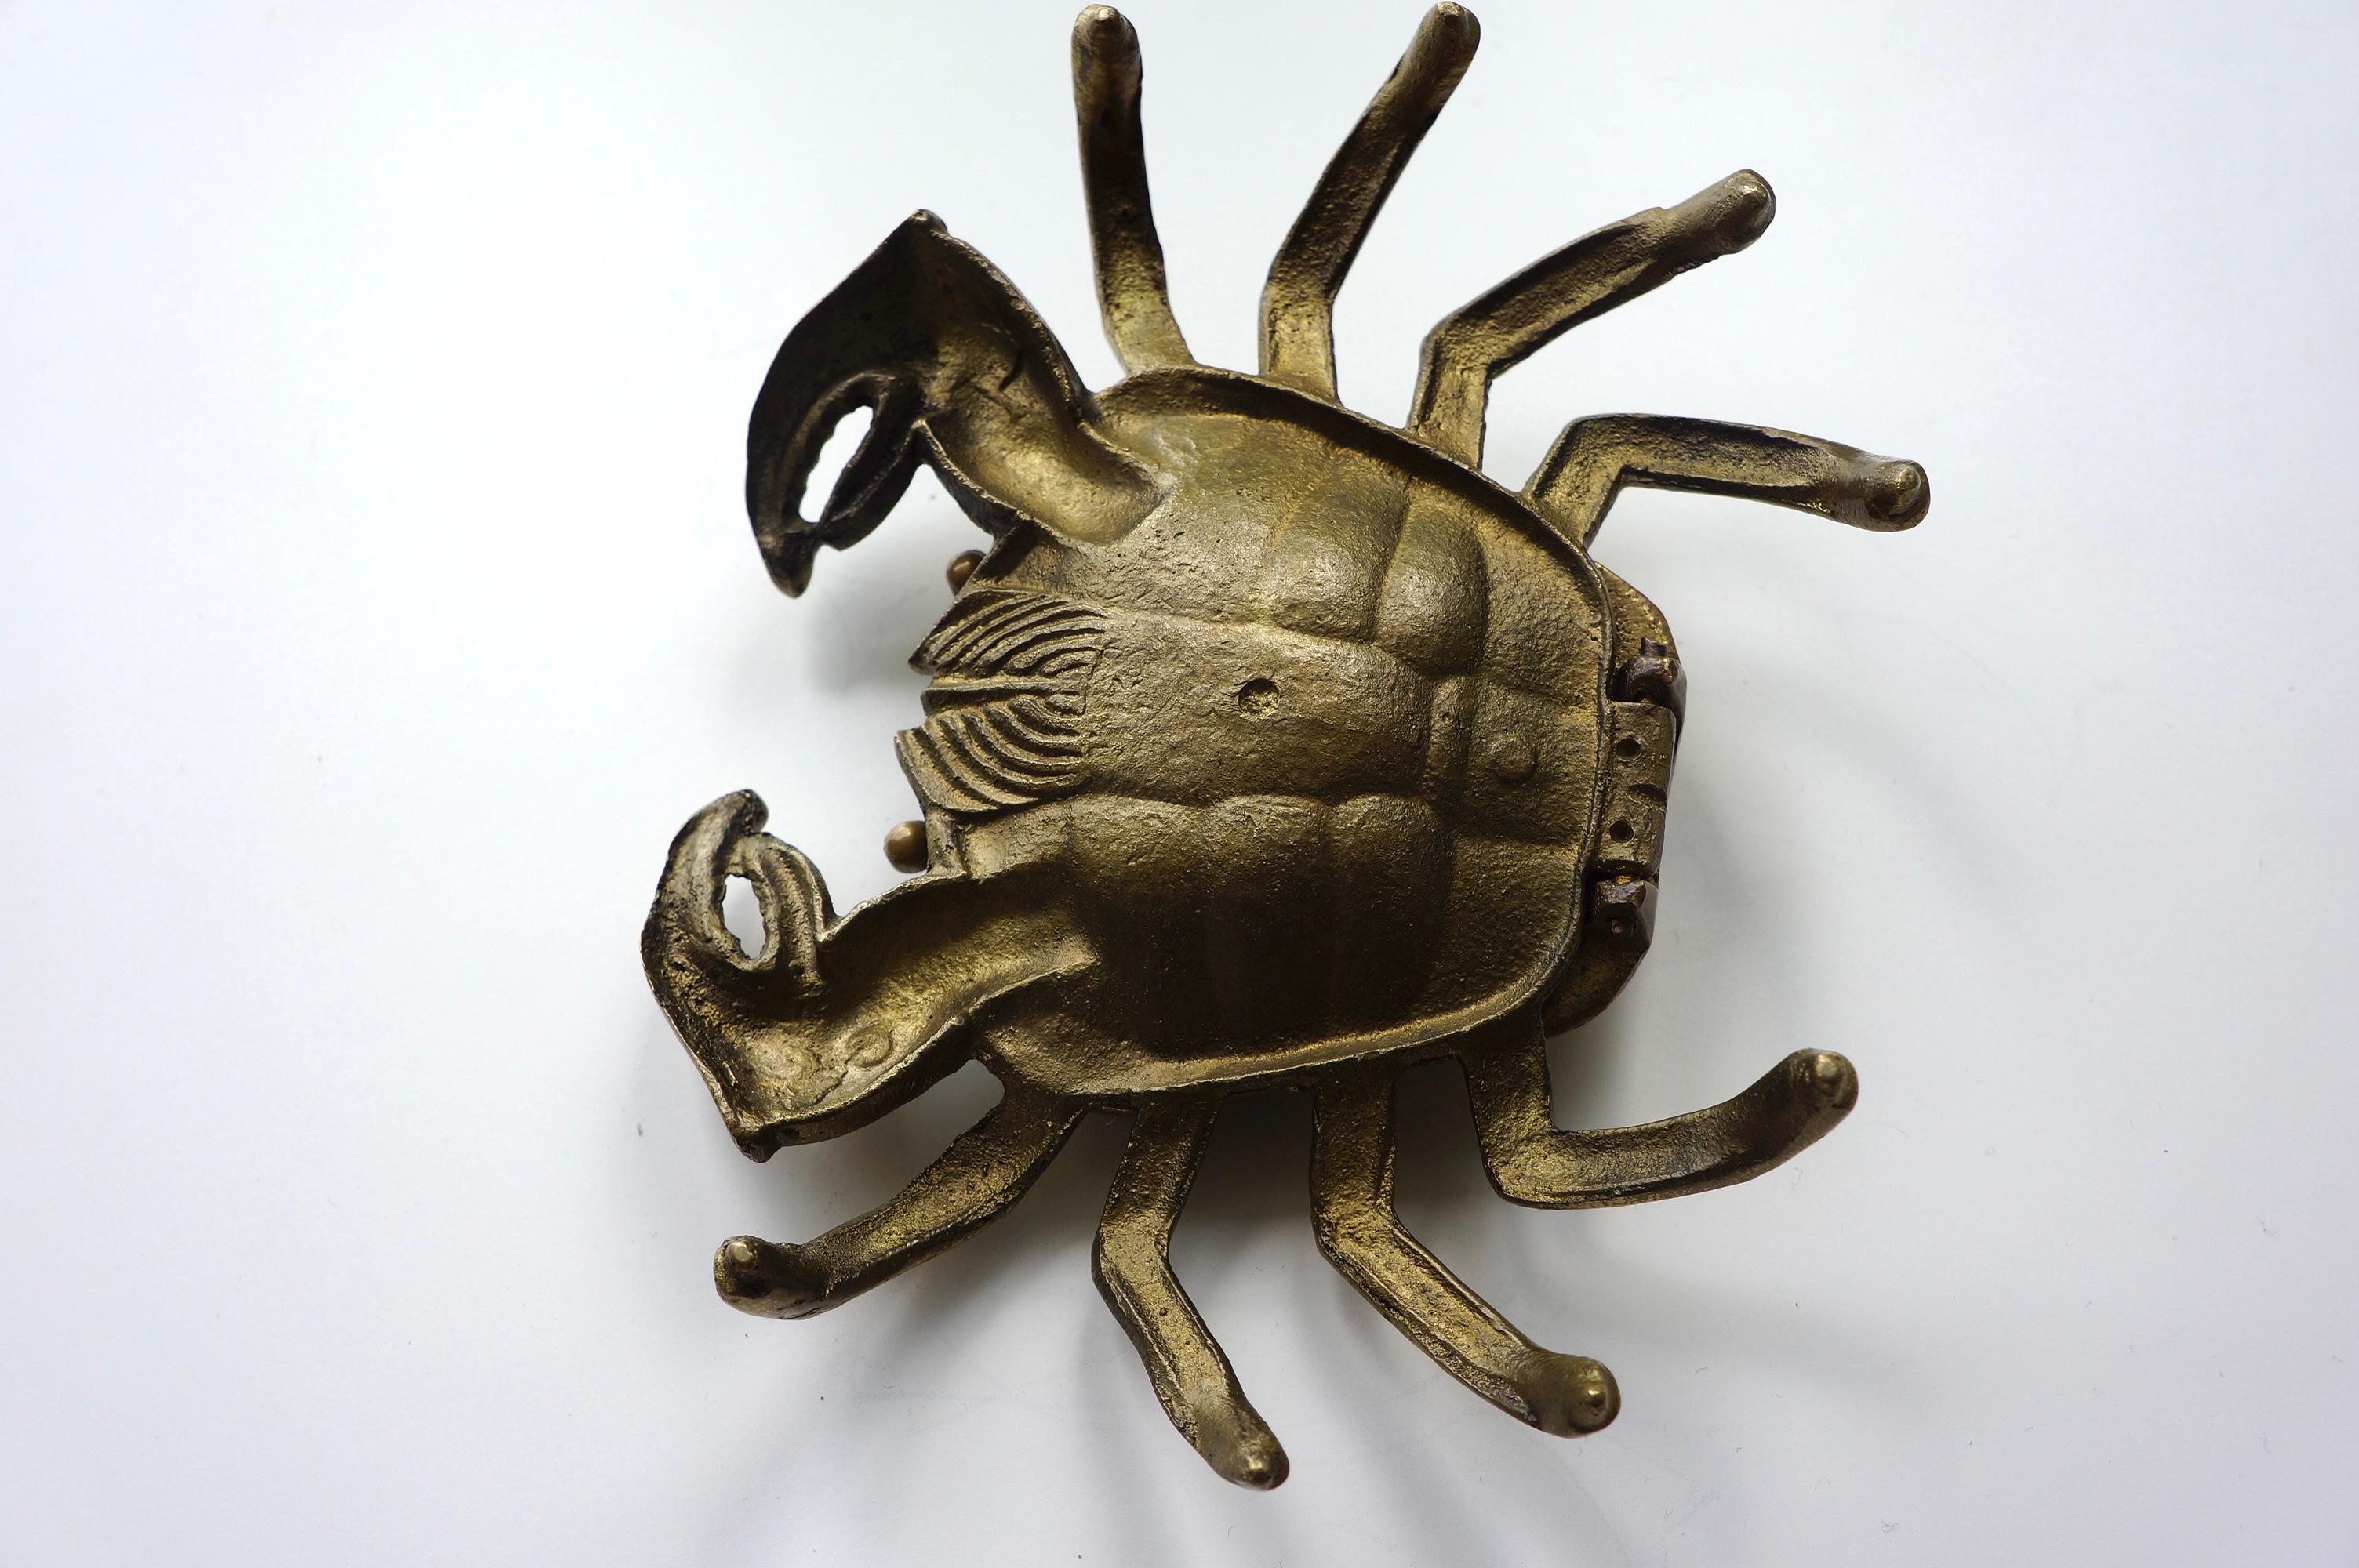 Dekoratives Objekt und Aschenbecher in Form einer Krabbe aus Messing  (Unbekannt)